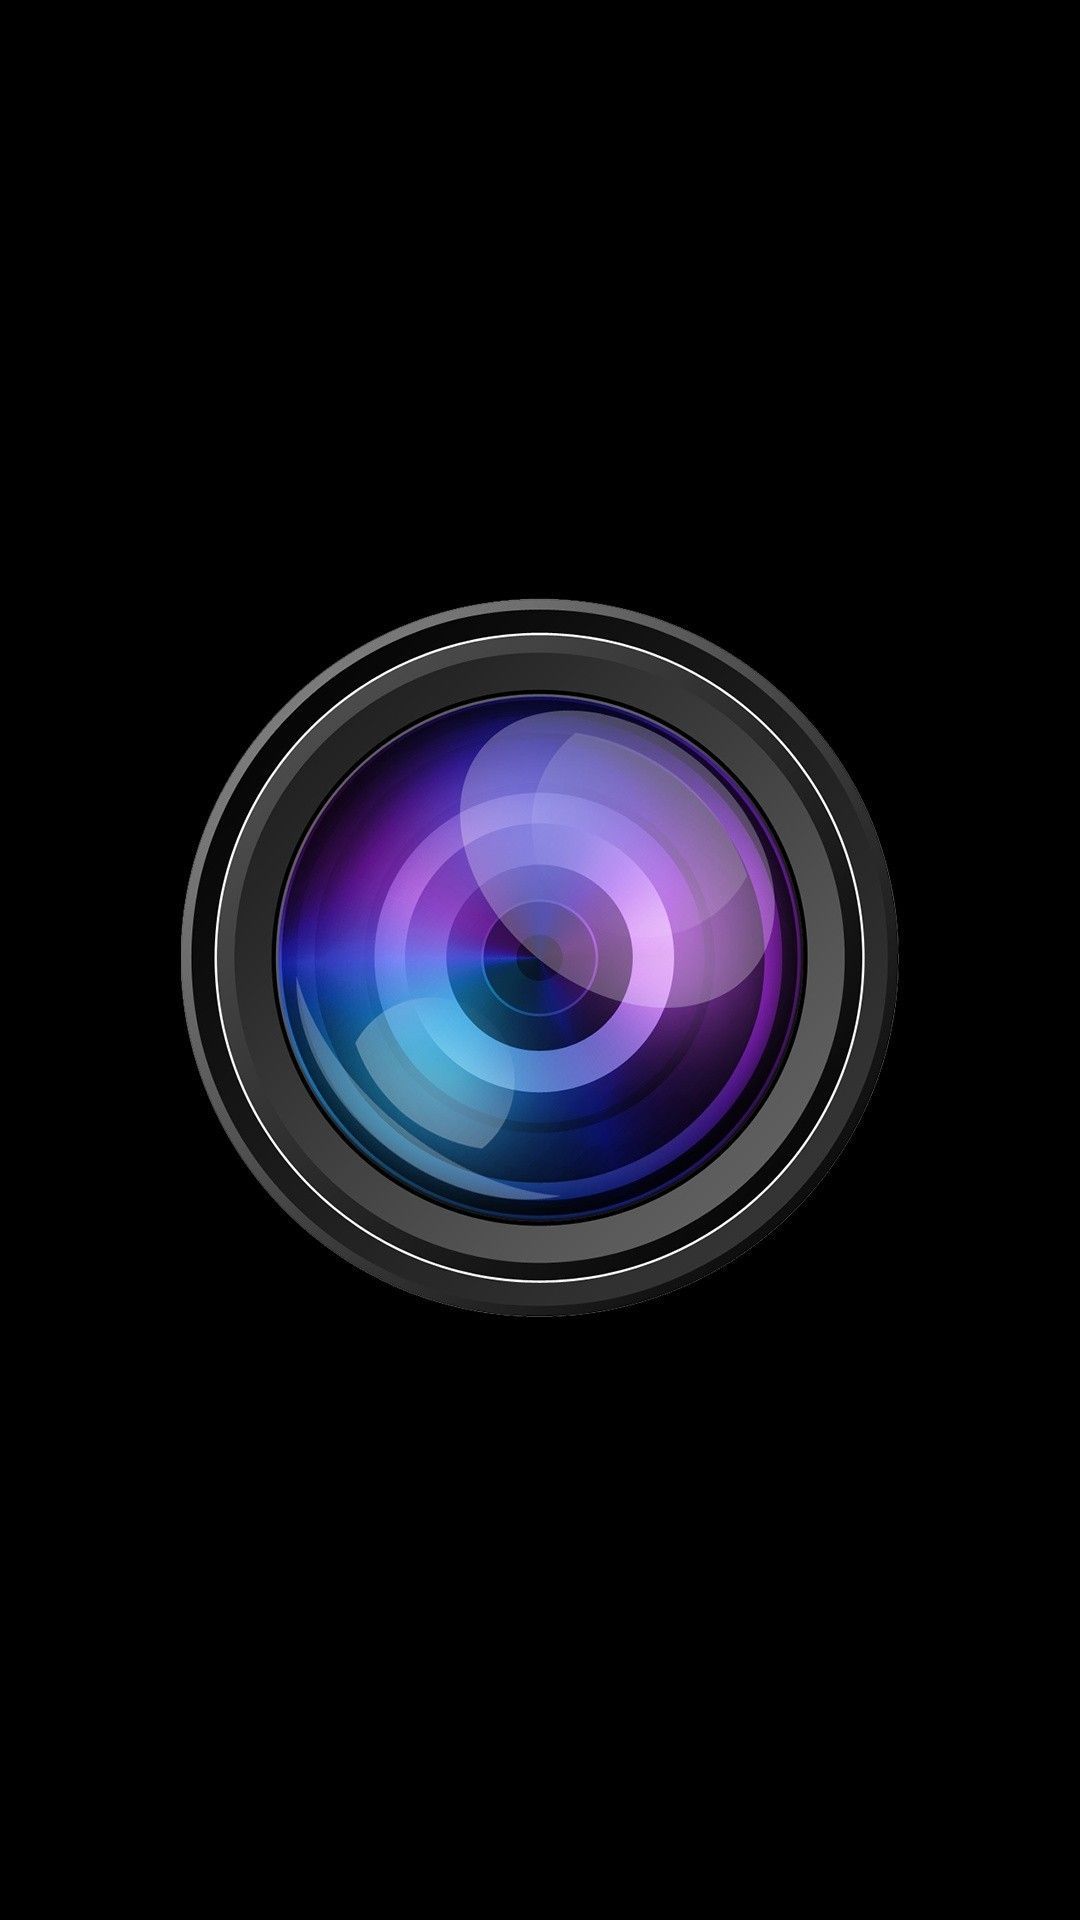 iPhone Wallpaper. Lens, Camera lens, Cameras & optics, Purple